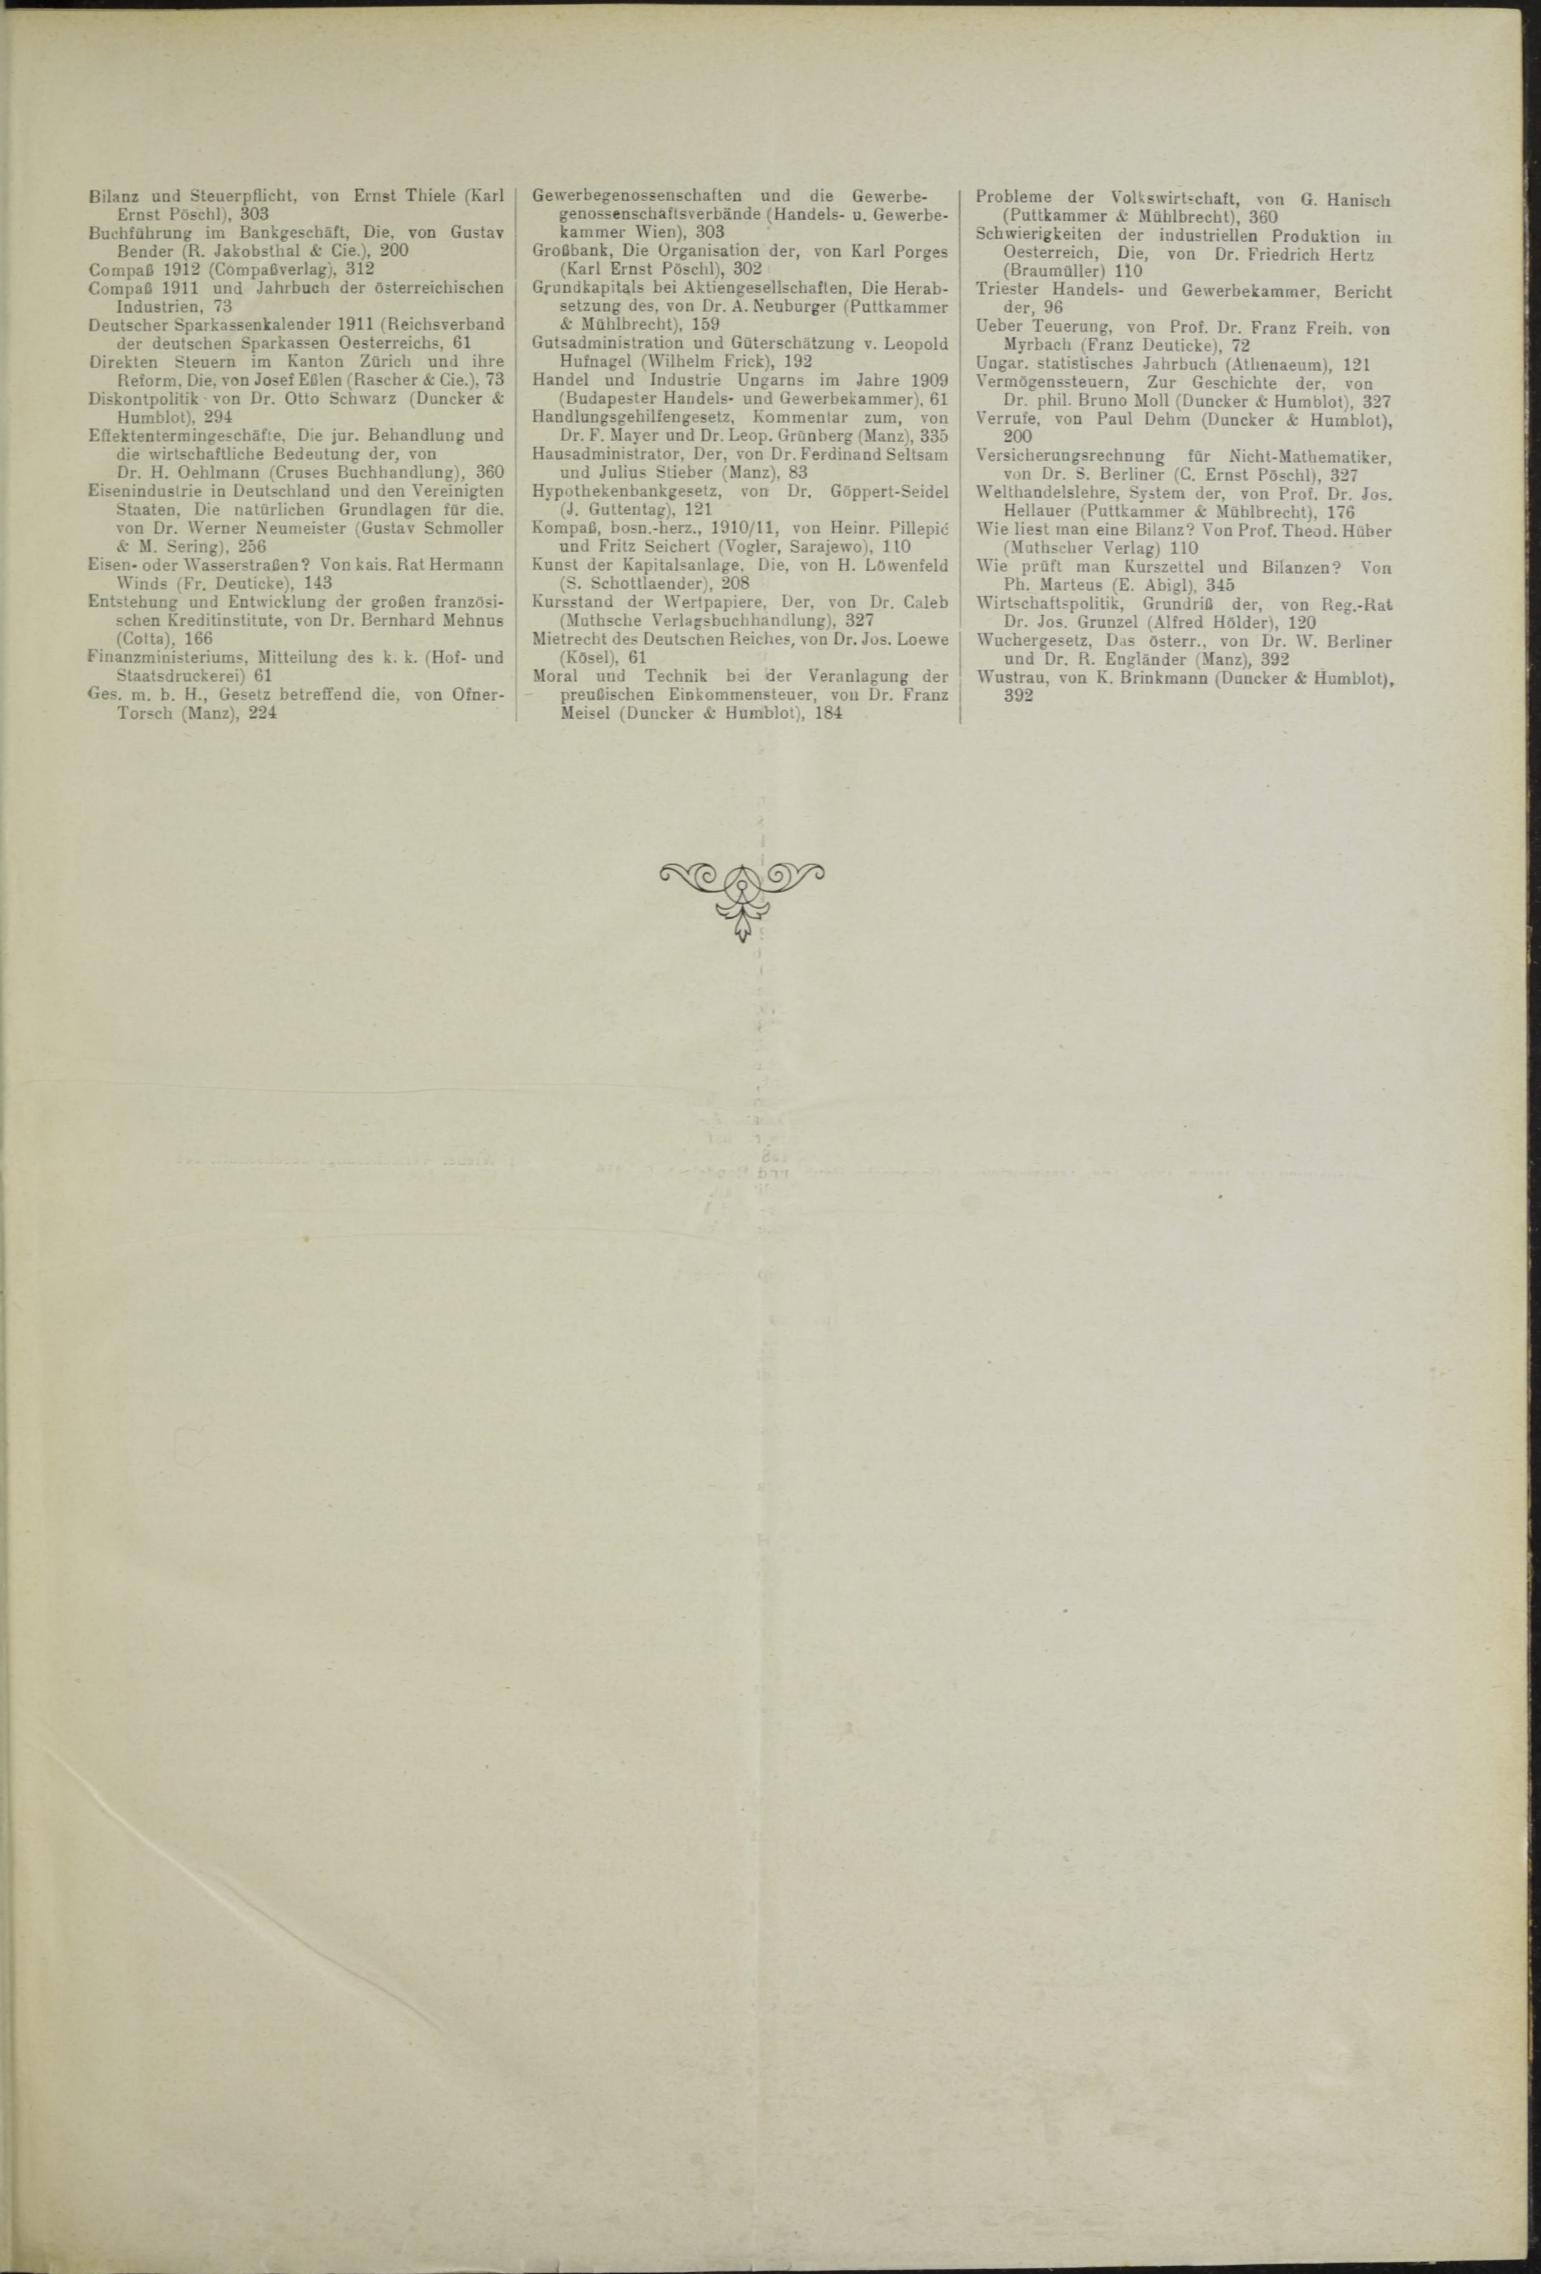 Der Tresor 04.03.1911 - Seite 13